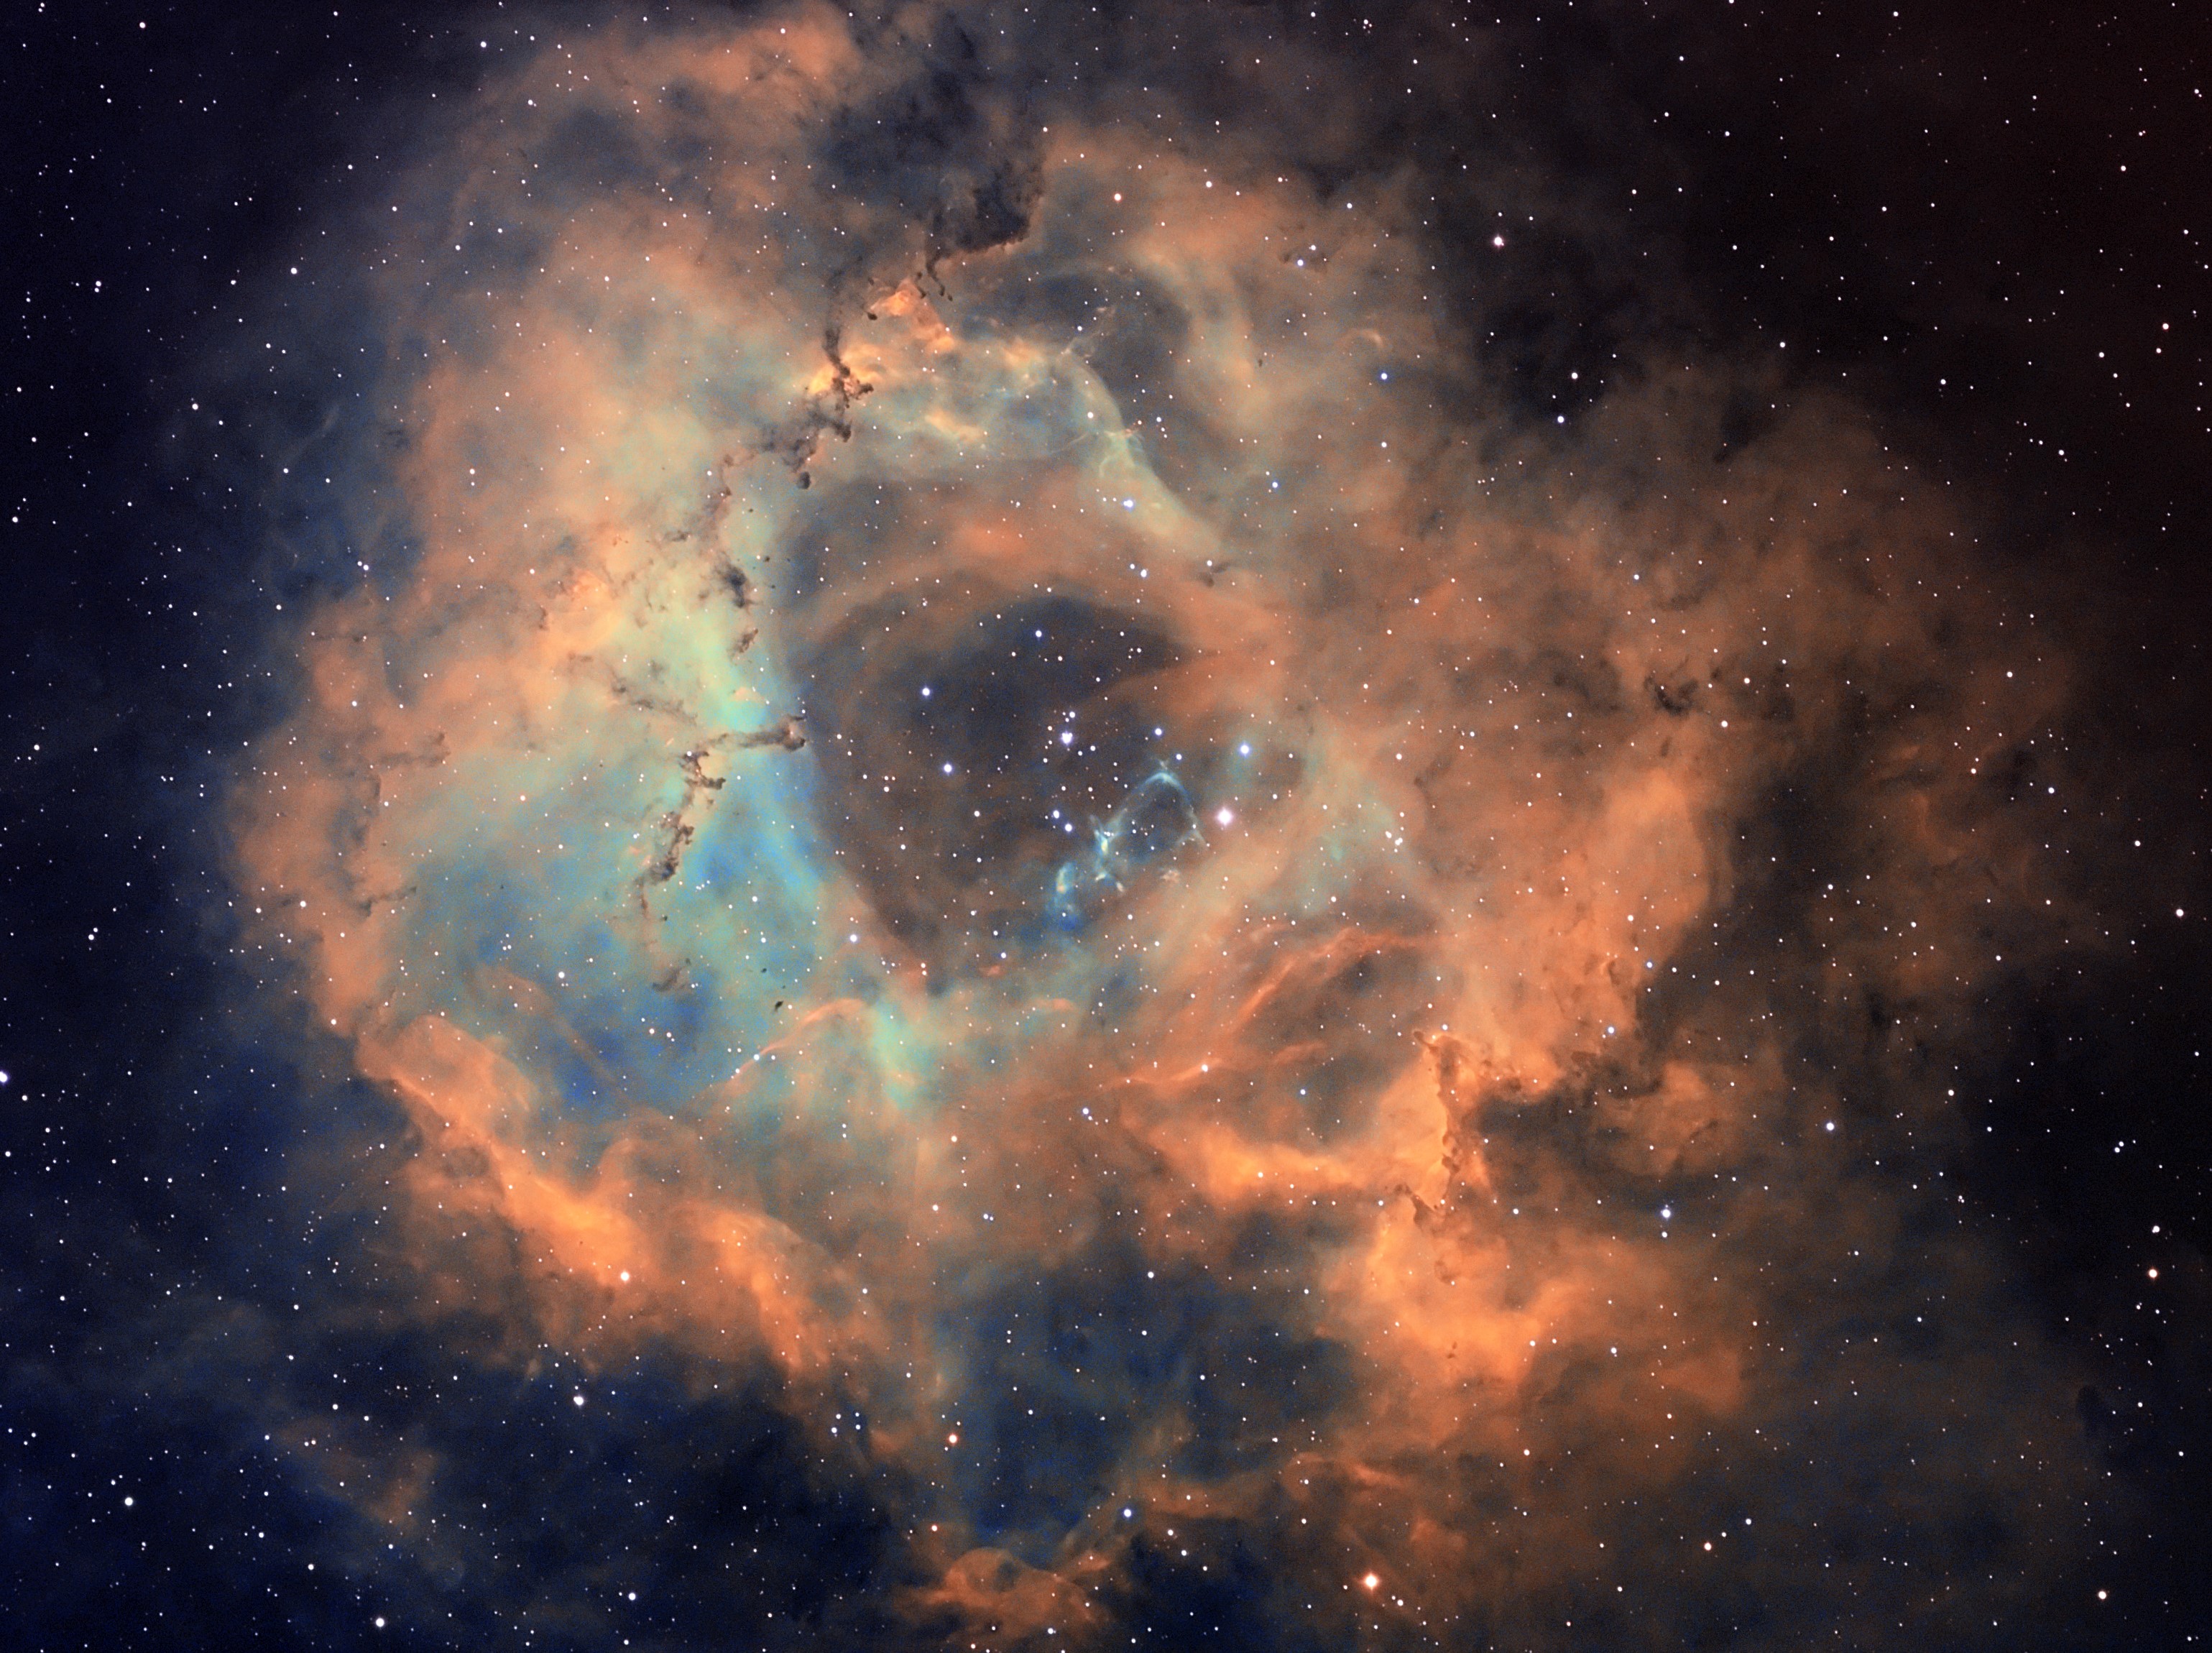 NGC2244-RGB-偏红-1 Win10 Photos处理-1.jpg